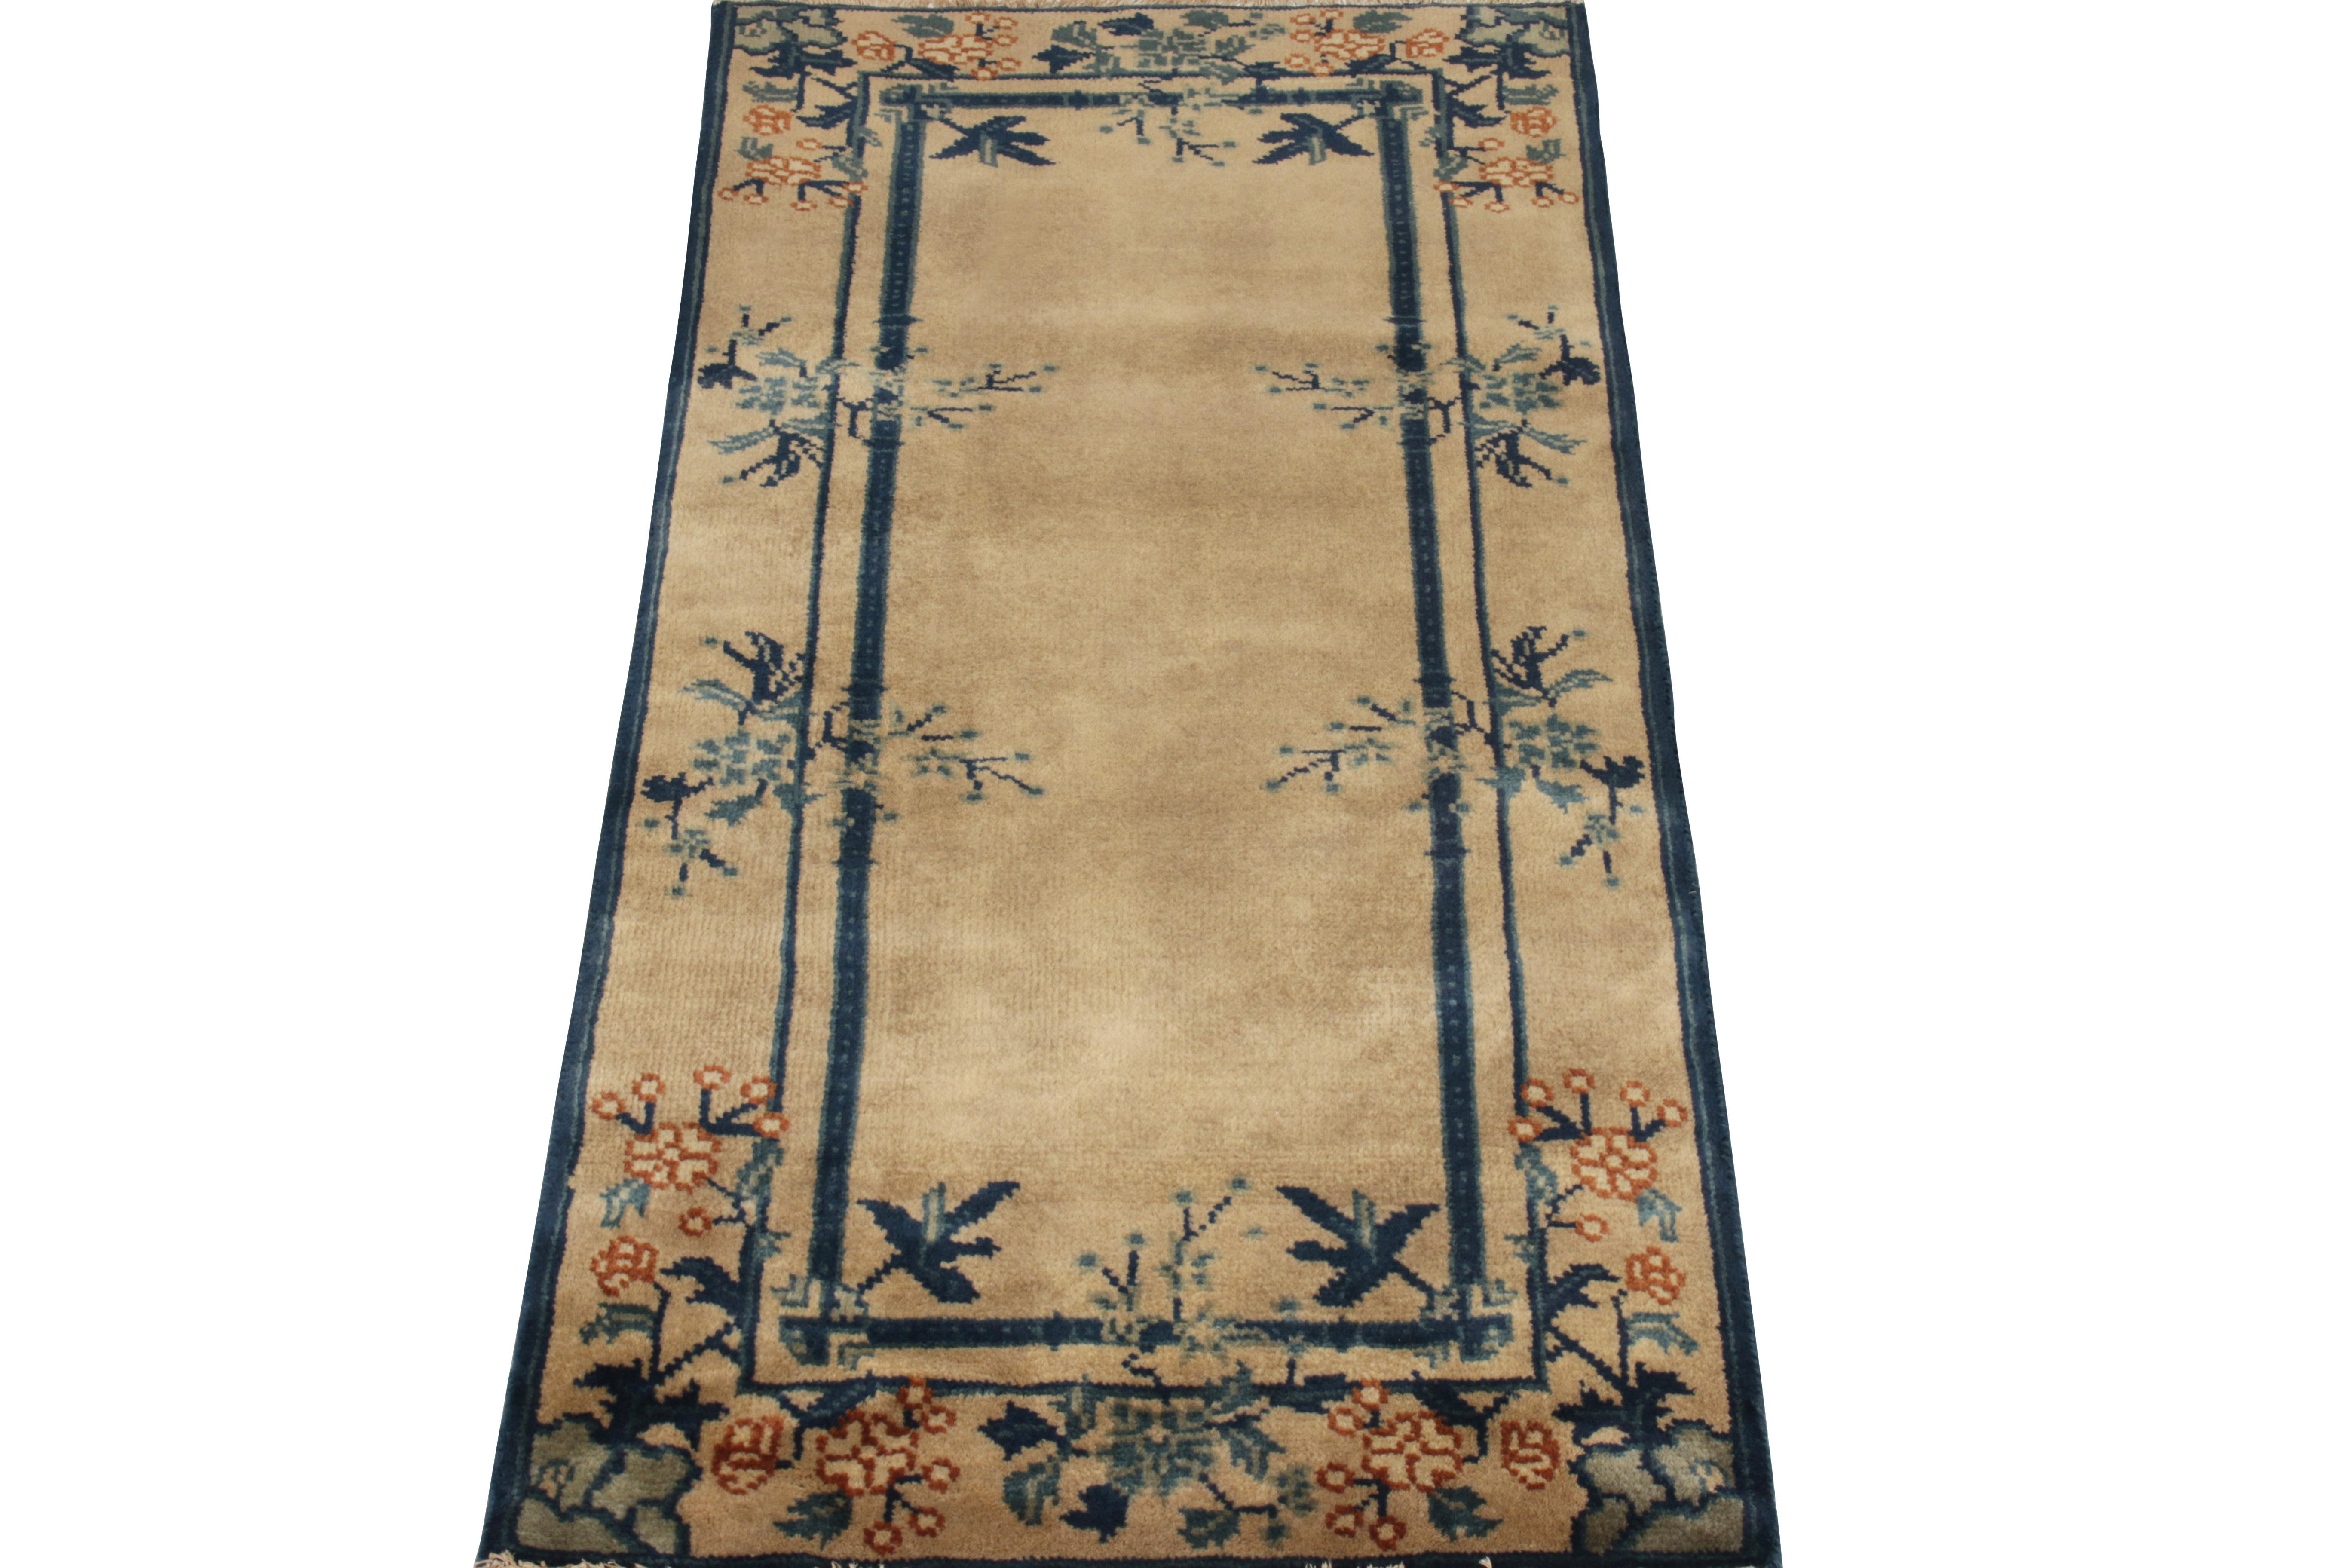 Dieses 2 x 4 große Vintage-Tuch aus der Antique & Vintage Collection von Rug & Kilim ist eine Ode an den chinesischen Deco-Stil der 1920er Jahre. Es zeigt klassische Rahmen in Königsblau auf einem luxuriösen beige-braunen Hintergrund, der die Blumen